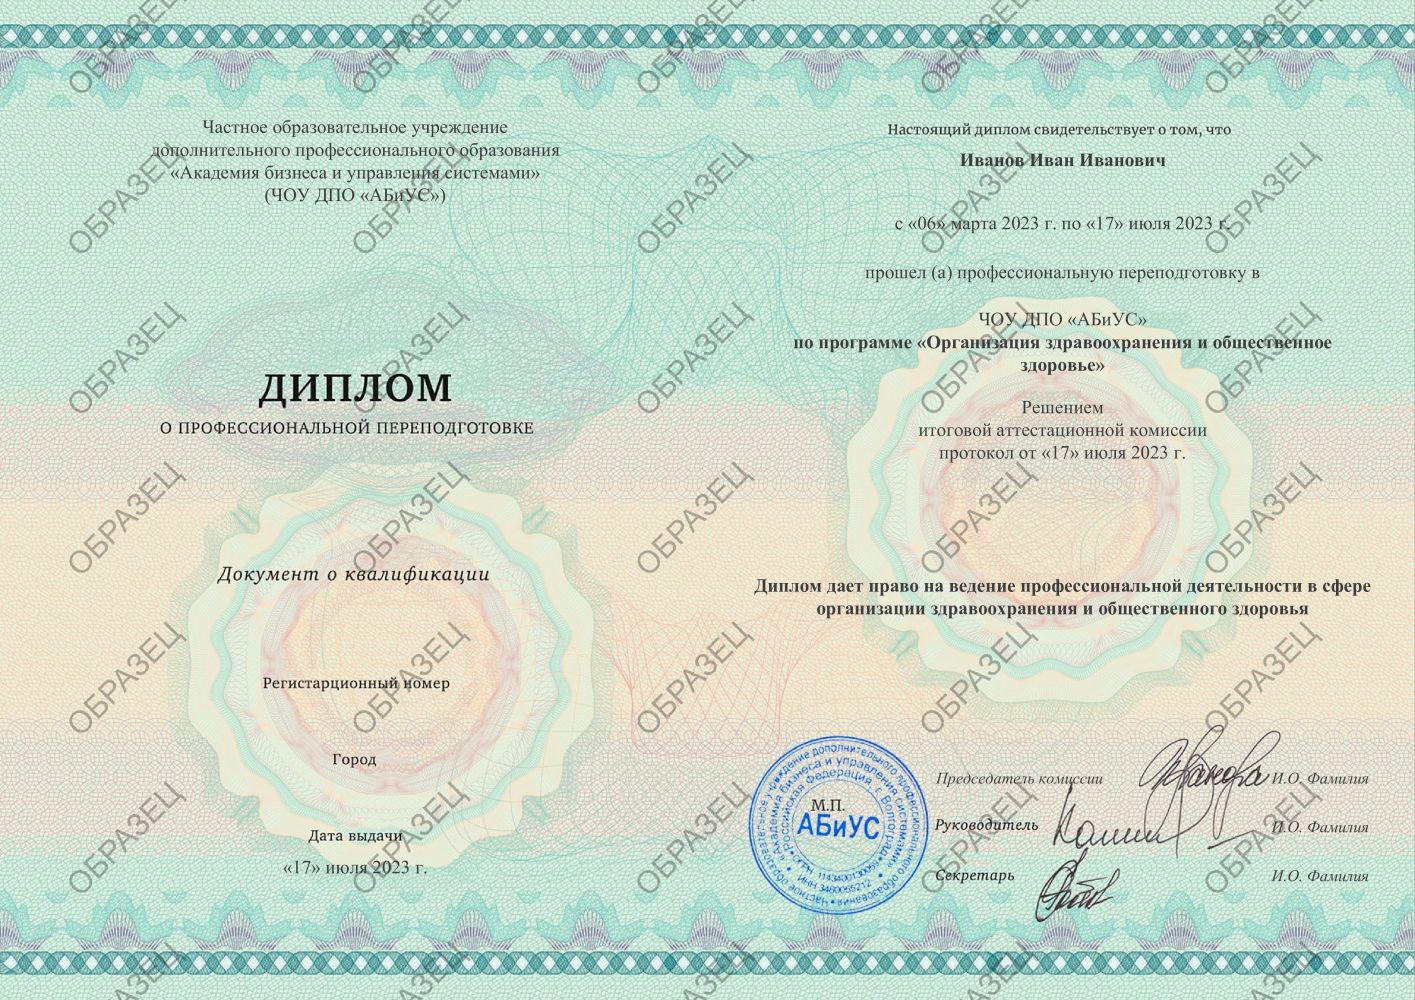 Диплом Организация здравоохранения и общественное здоровье 576 часов 33250 руб.